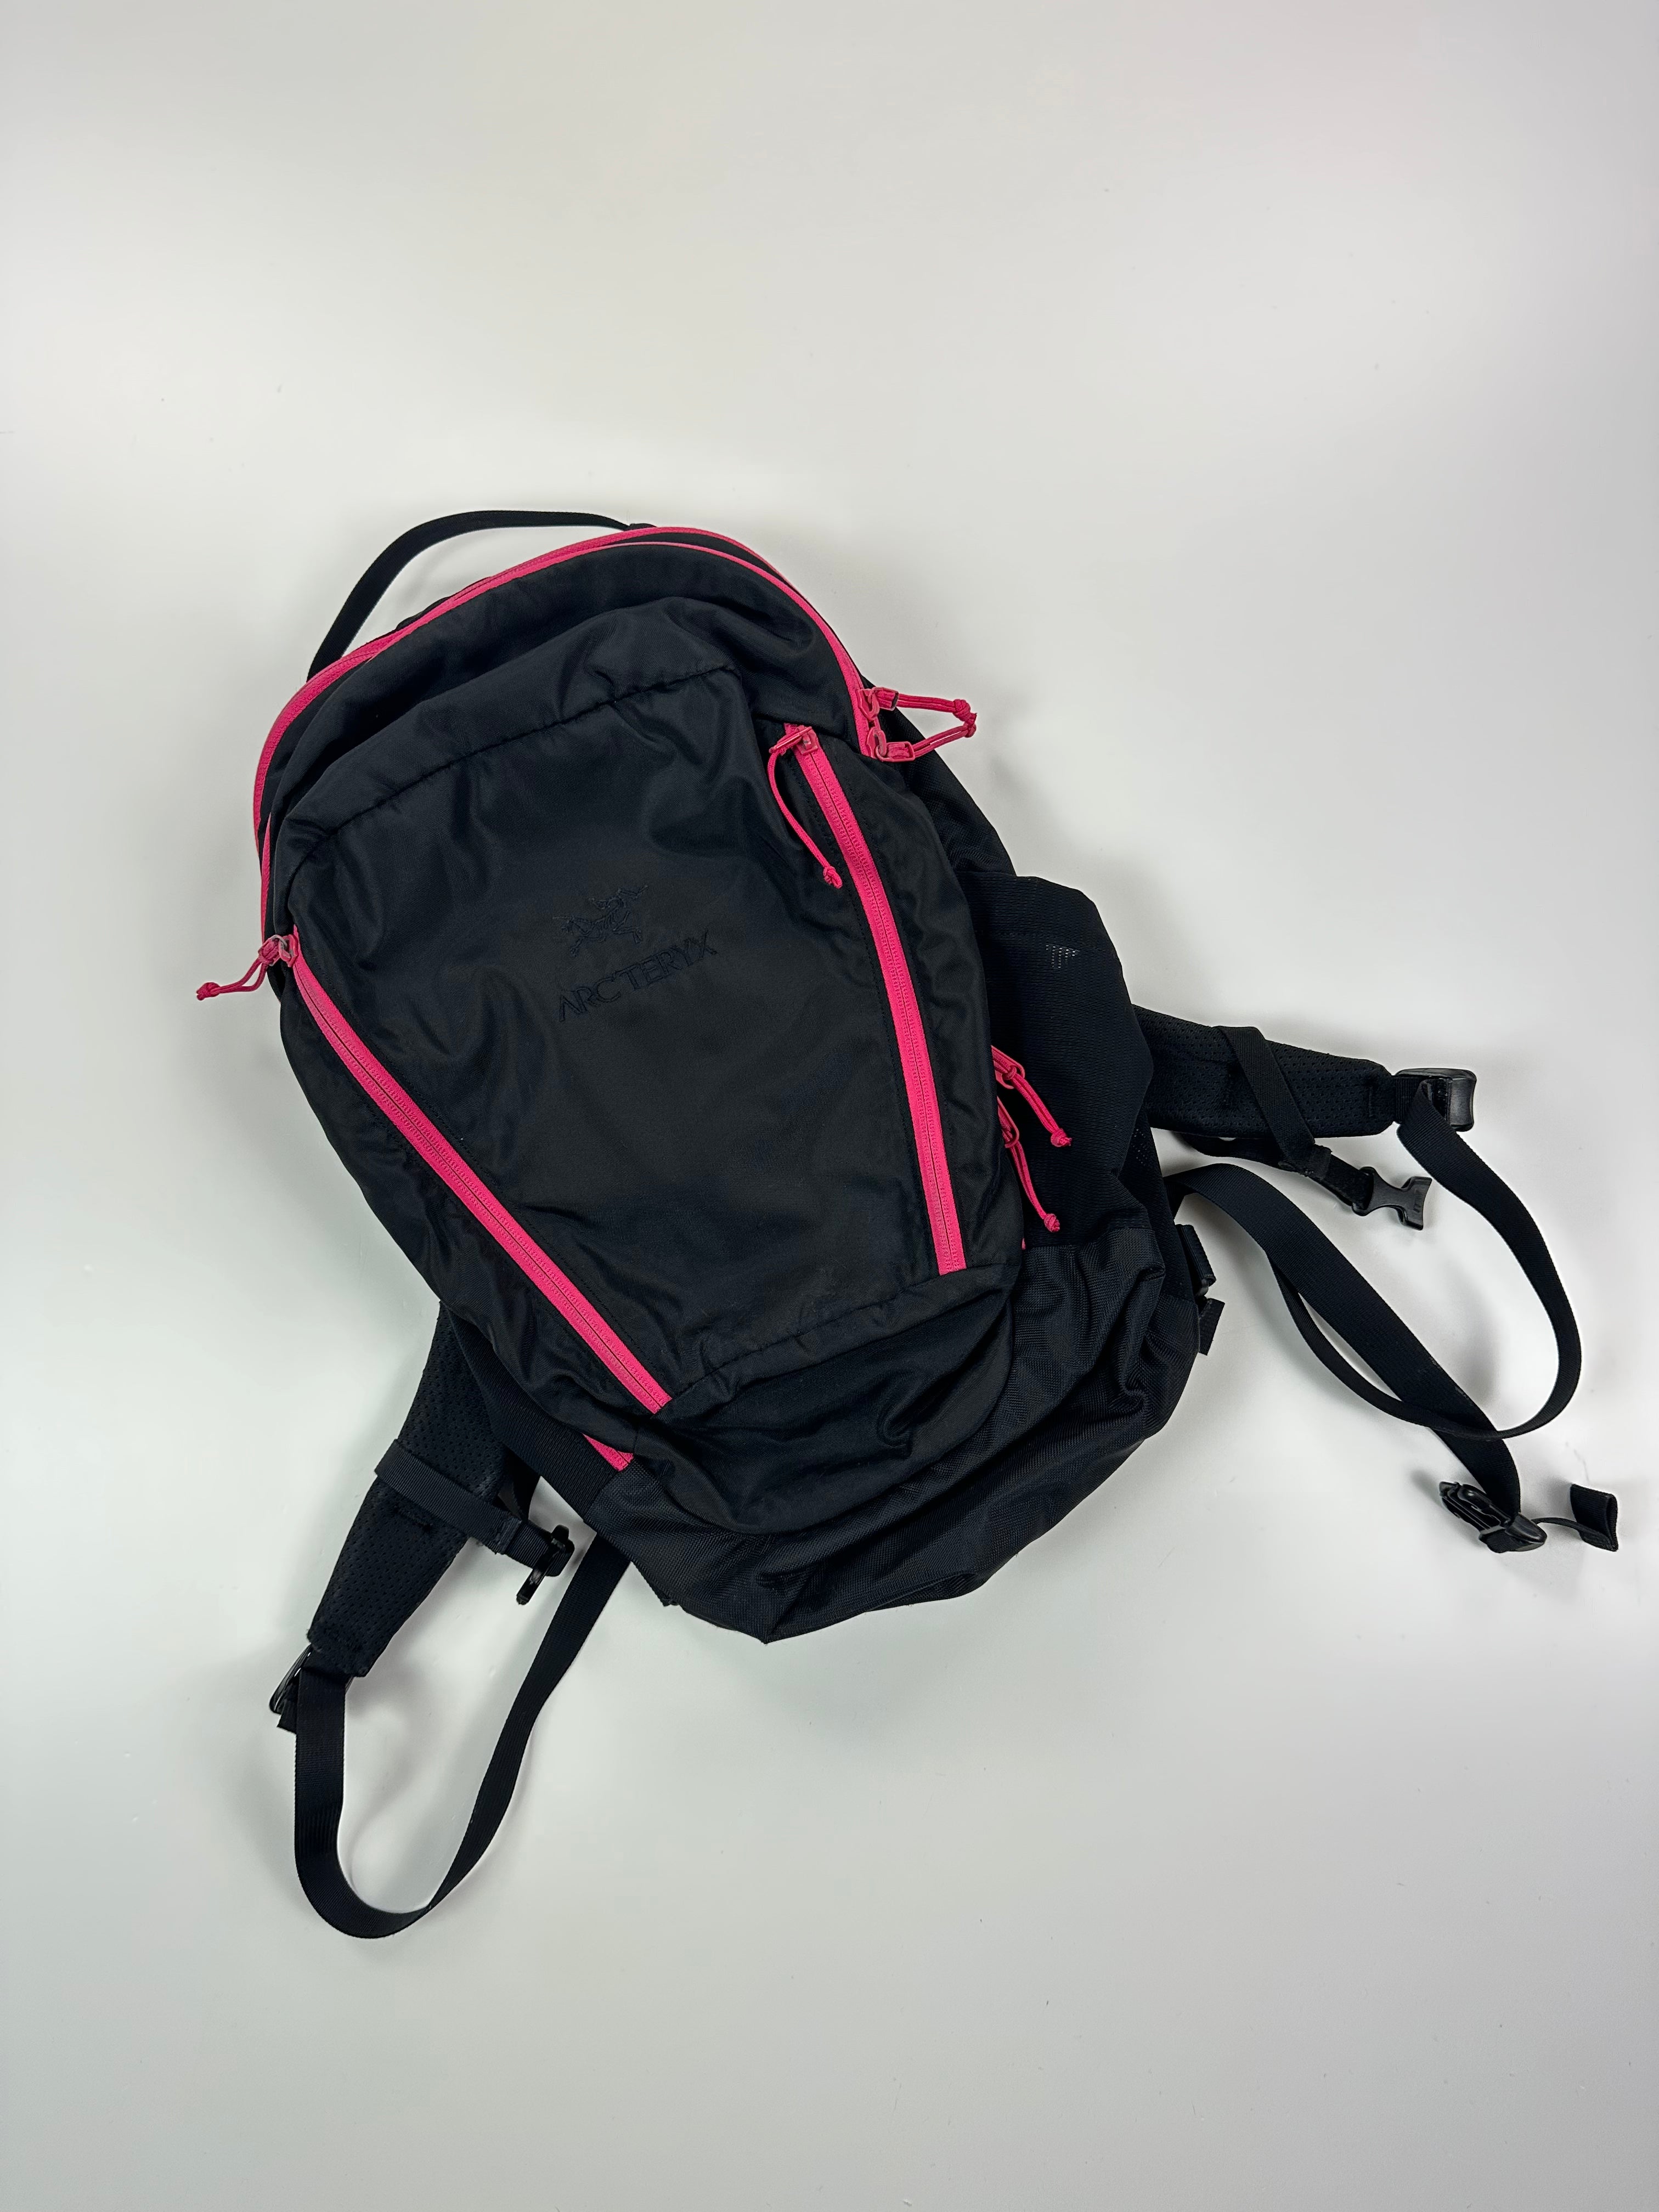 Arc’teryx X Beams Mantis 26 Backpack Black Pink